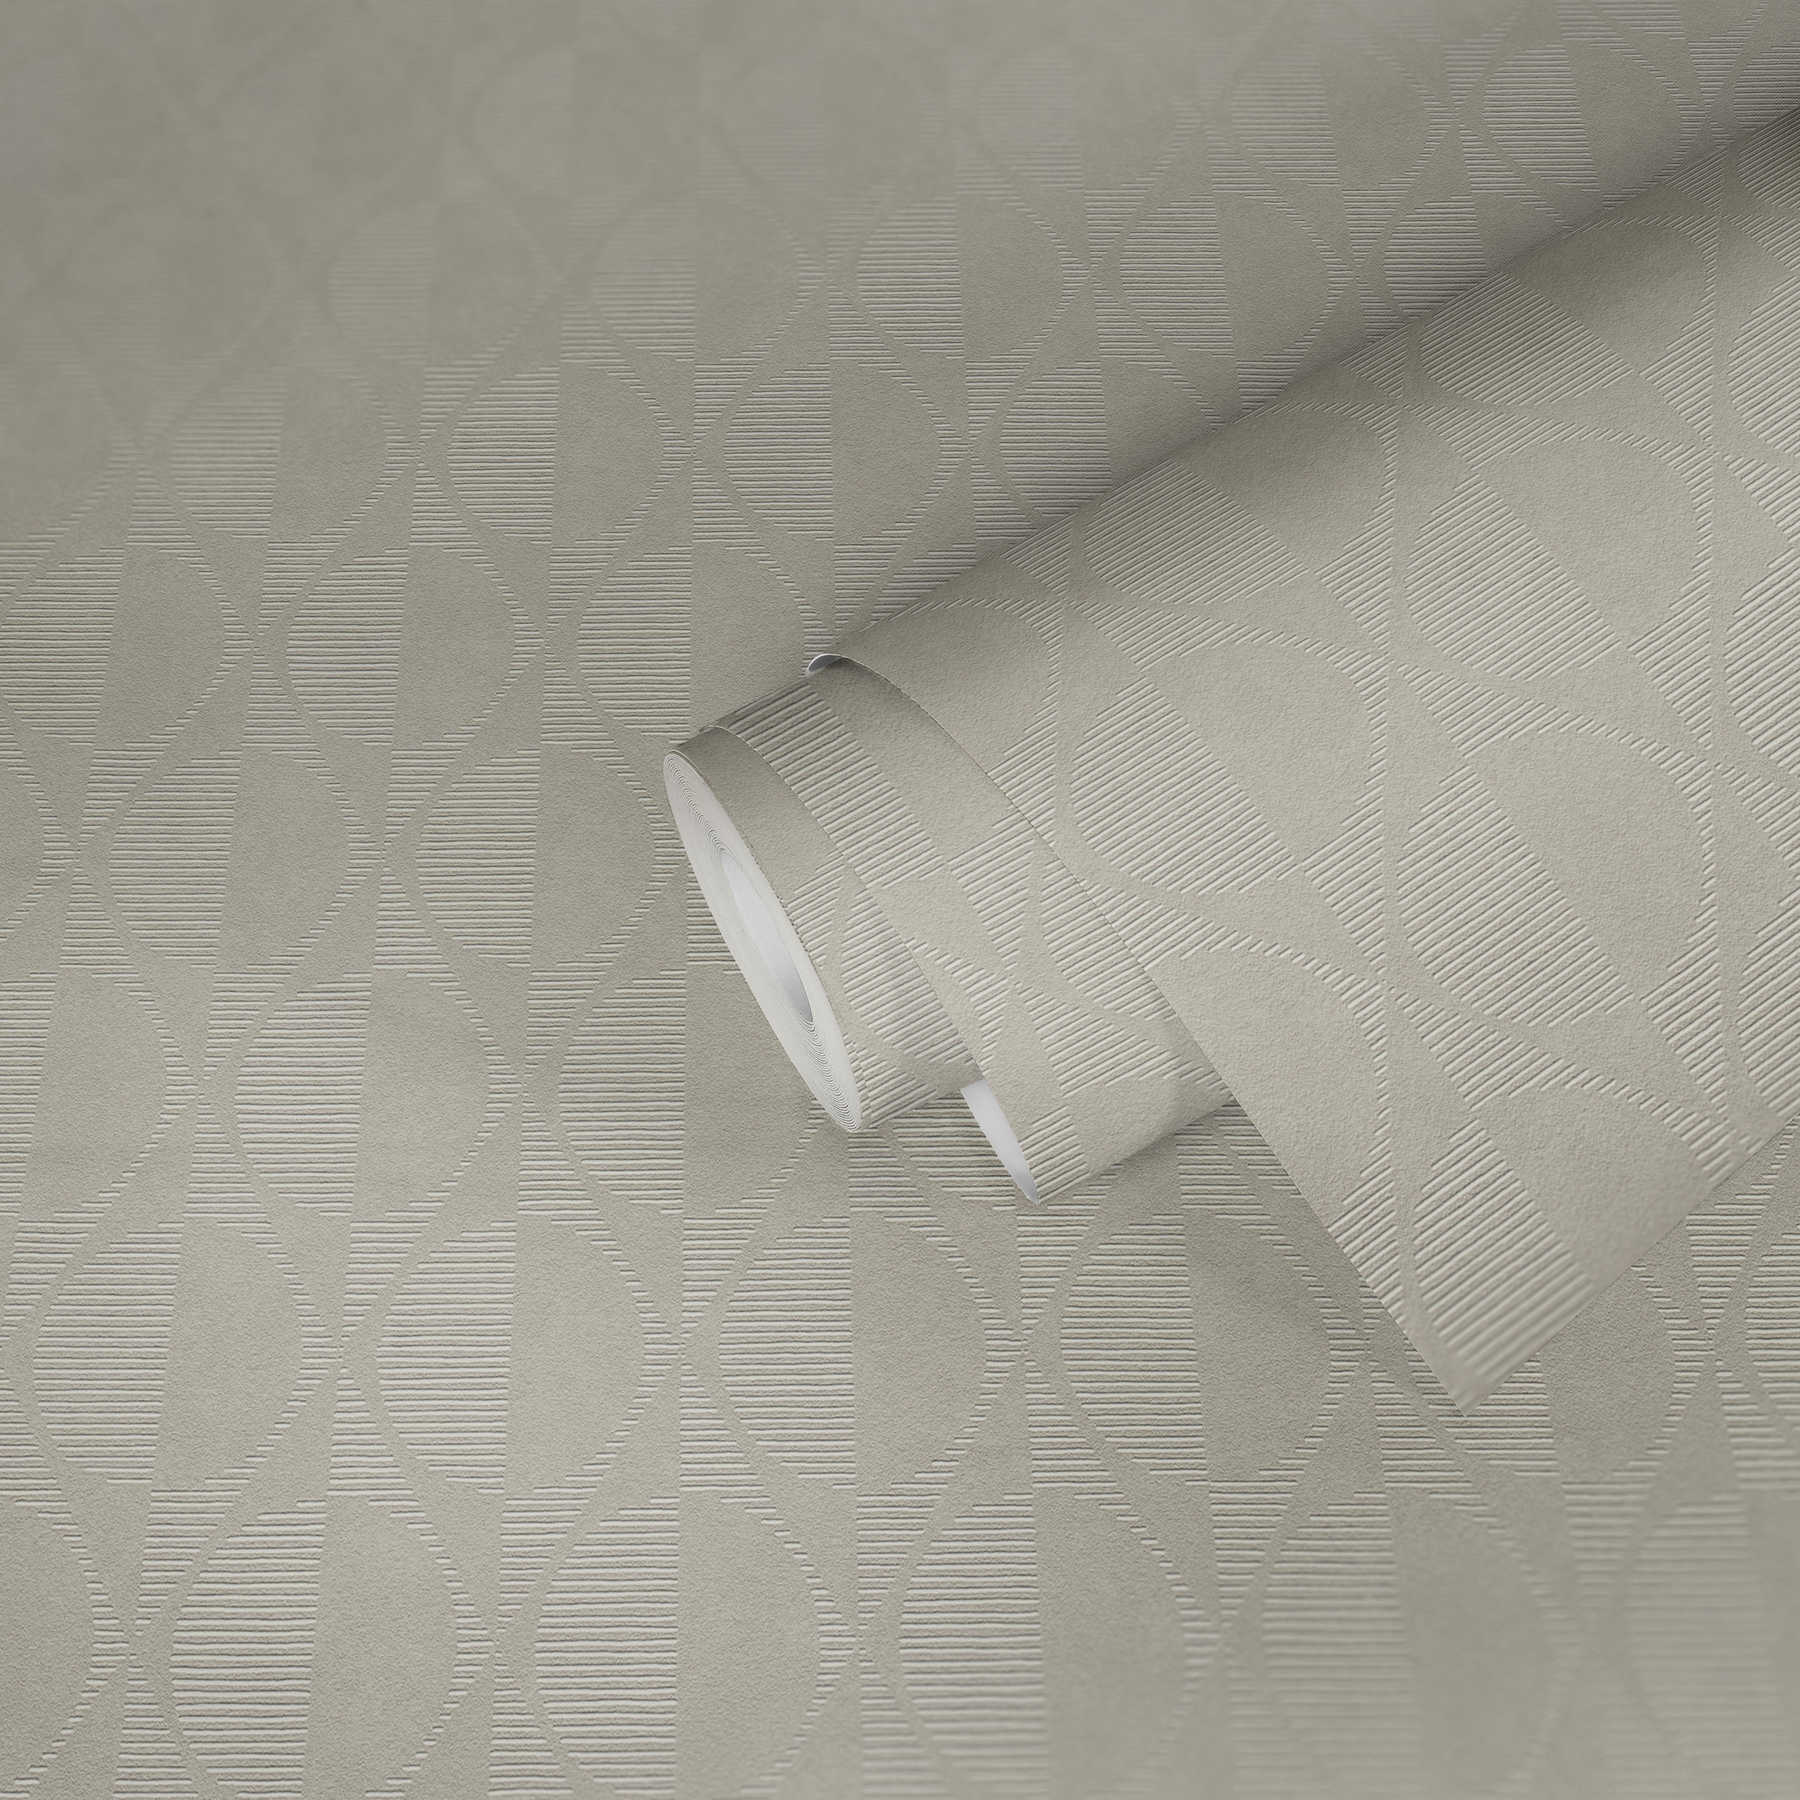             Retro behang met symmetrisch patroon - beige, grijs, crème
        